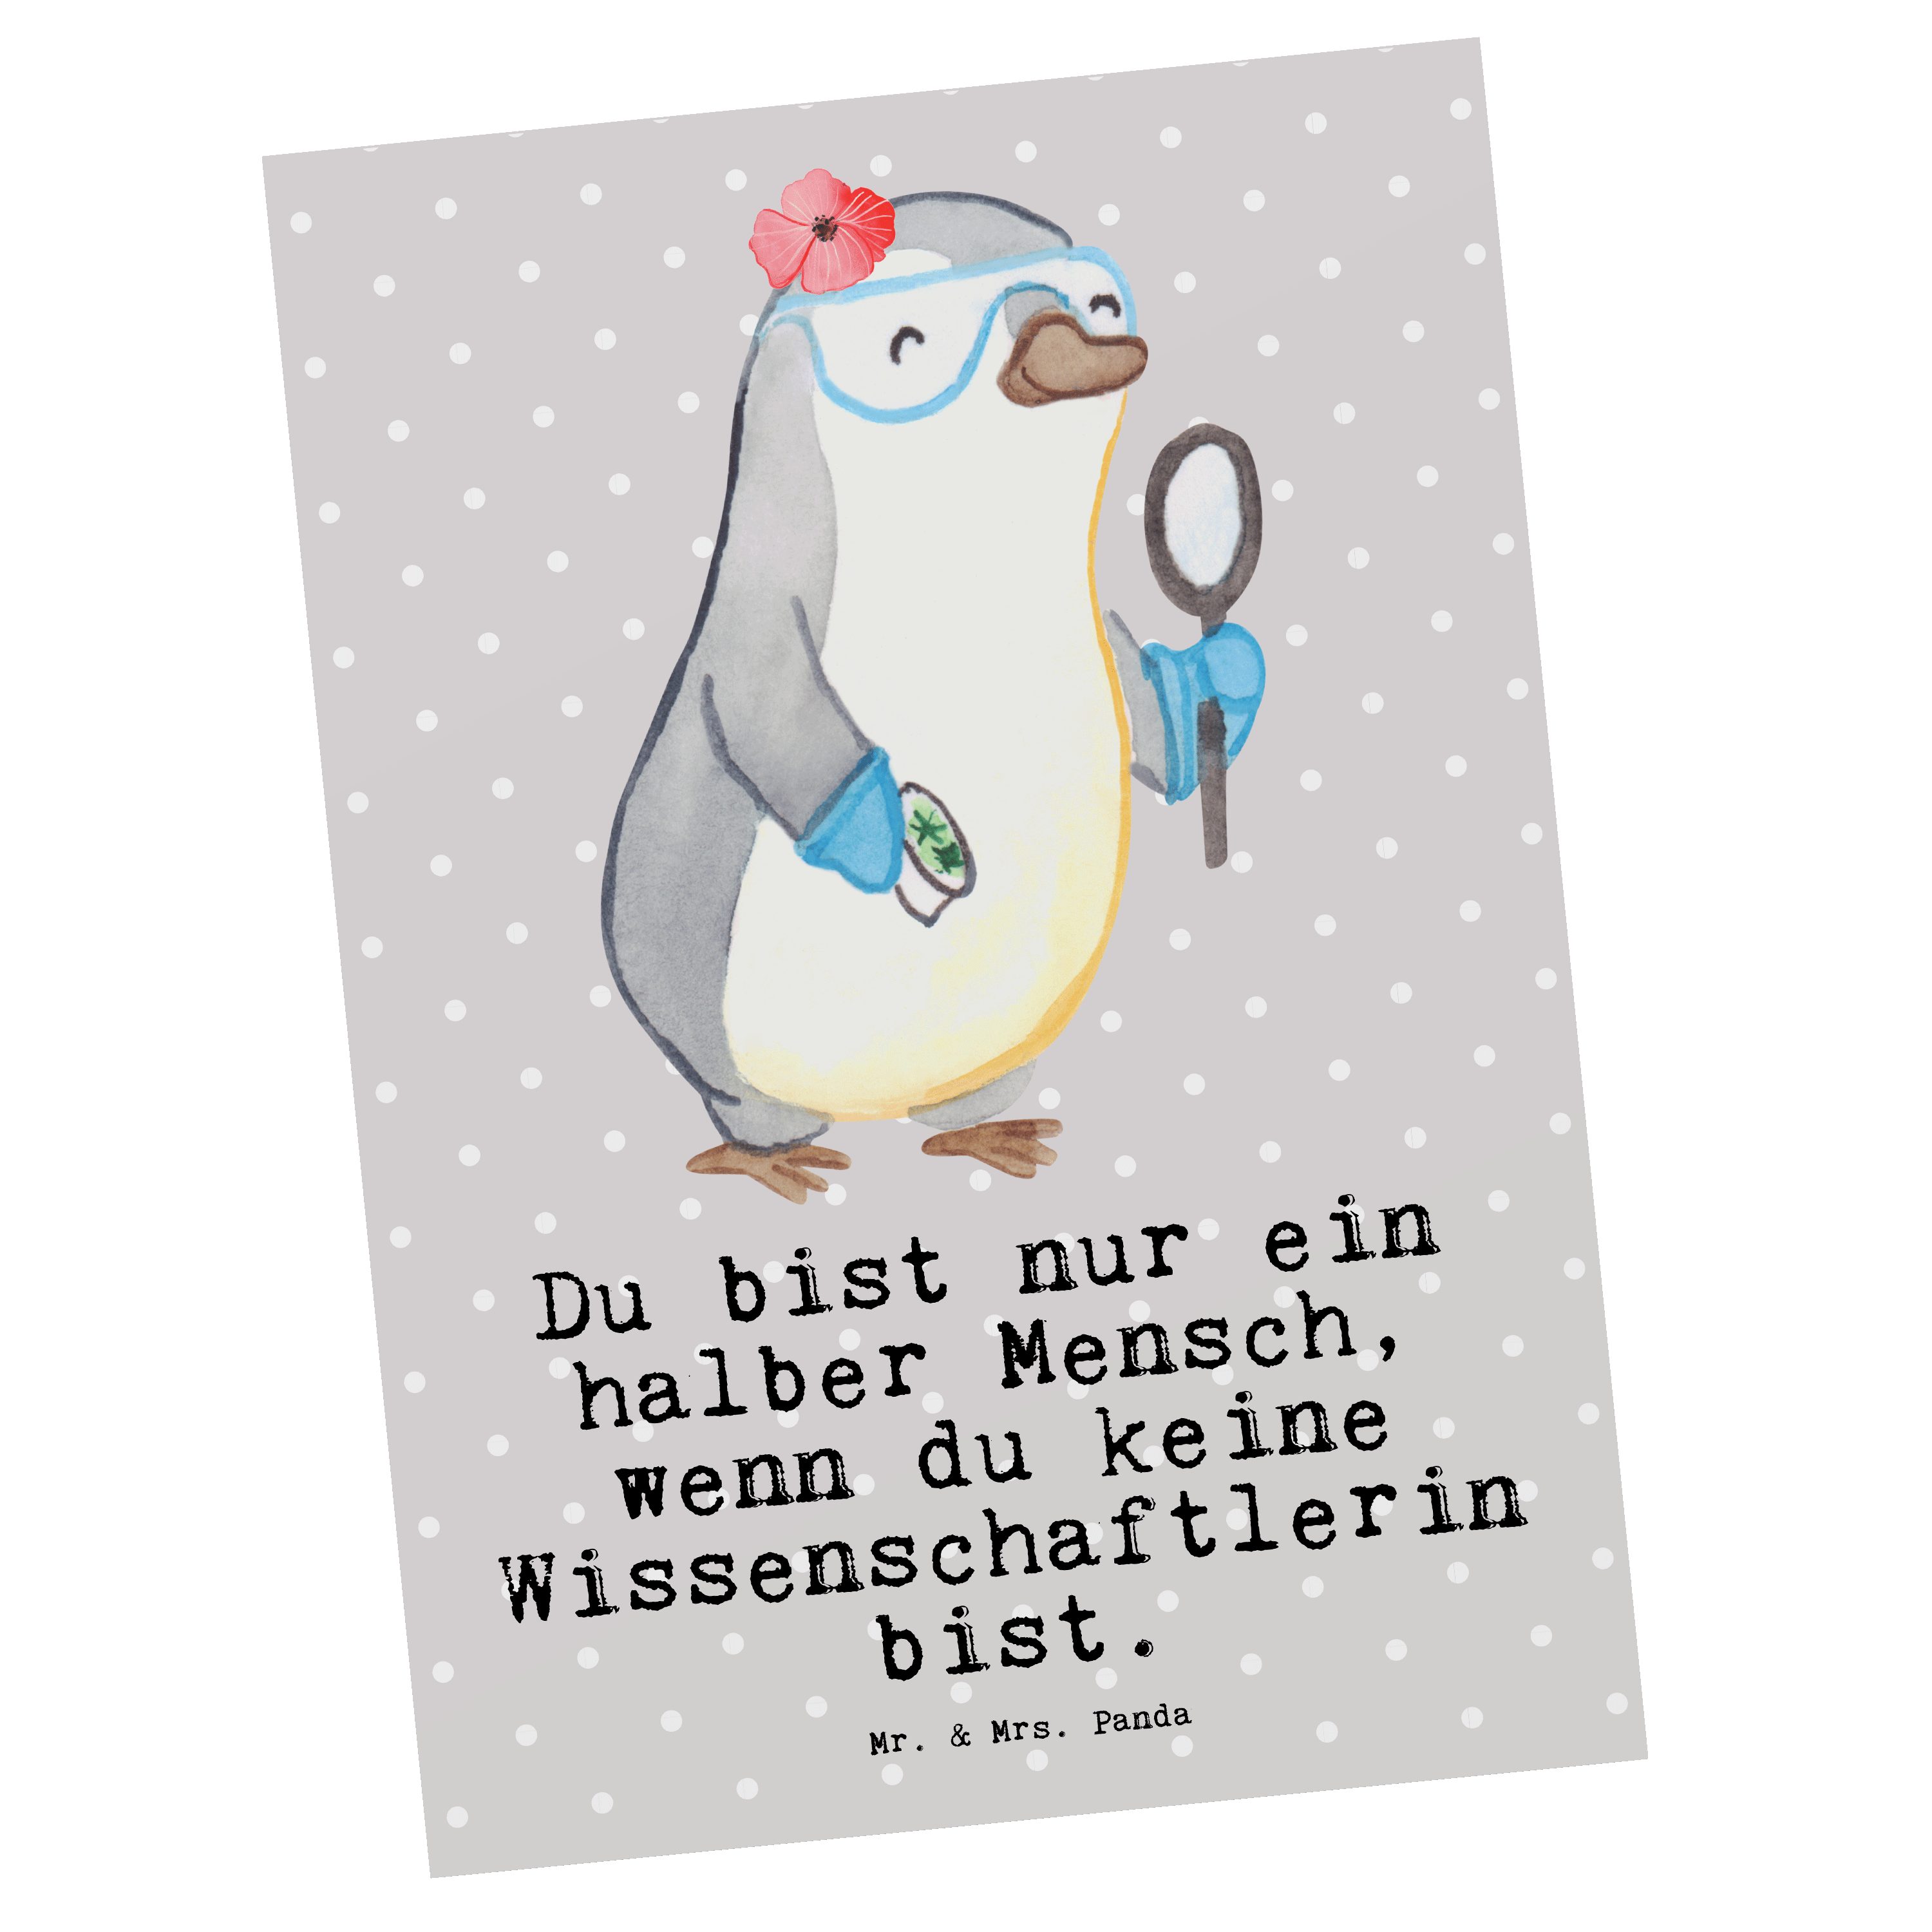 Mr. & Mrs. Panda Postkarte Wissenschaftlerin mit Herz - Grau Pastell - Geschenk, Grußkarte, Fors